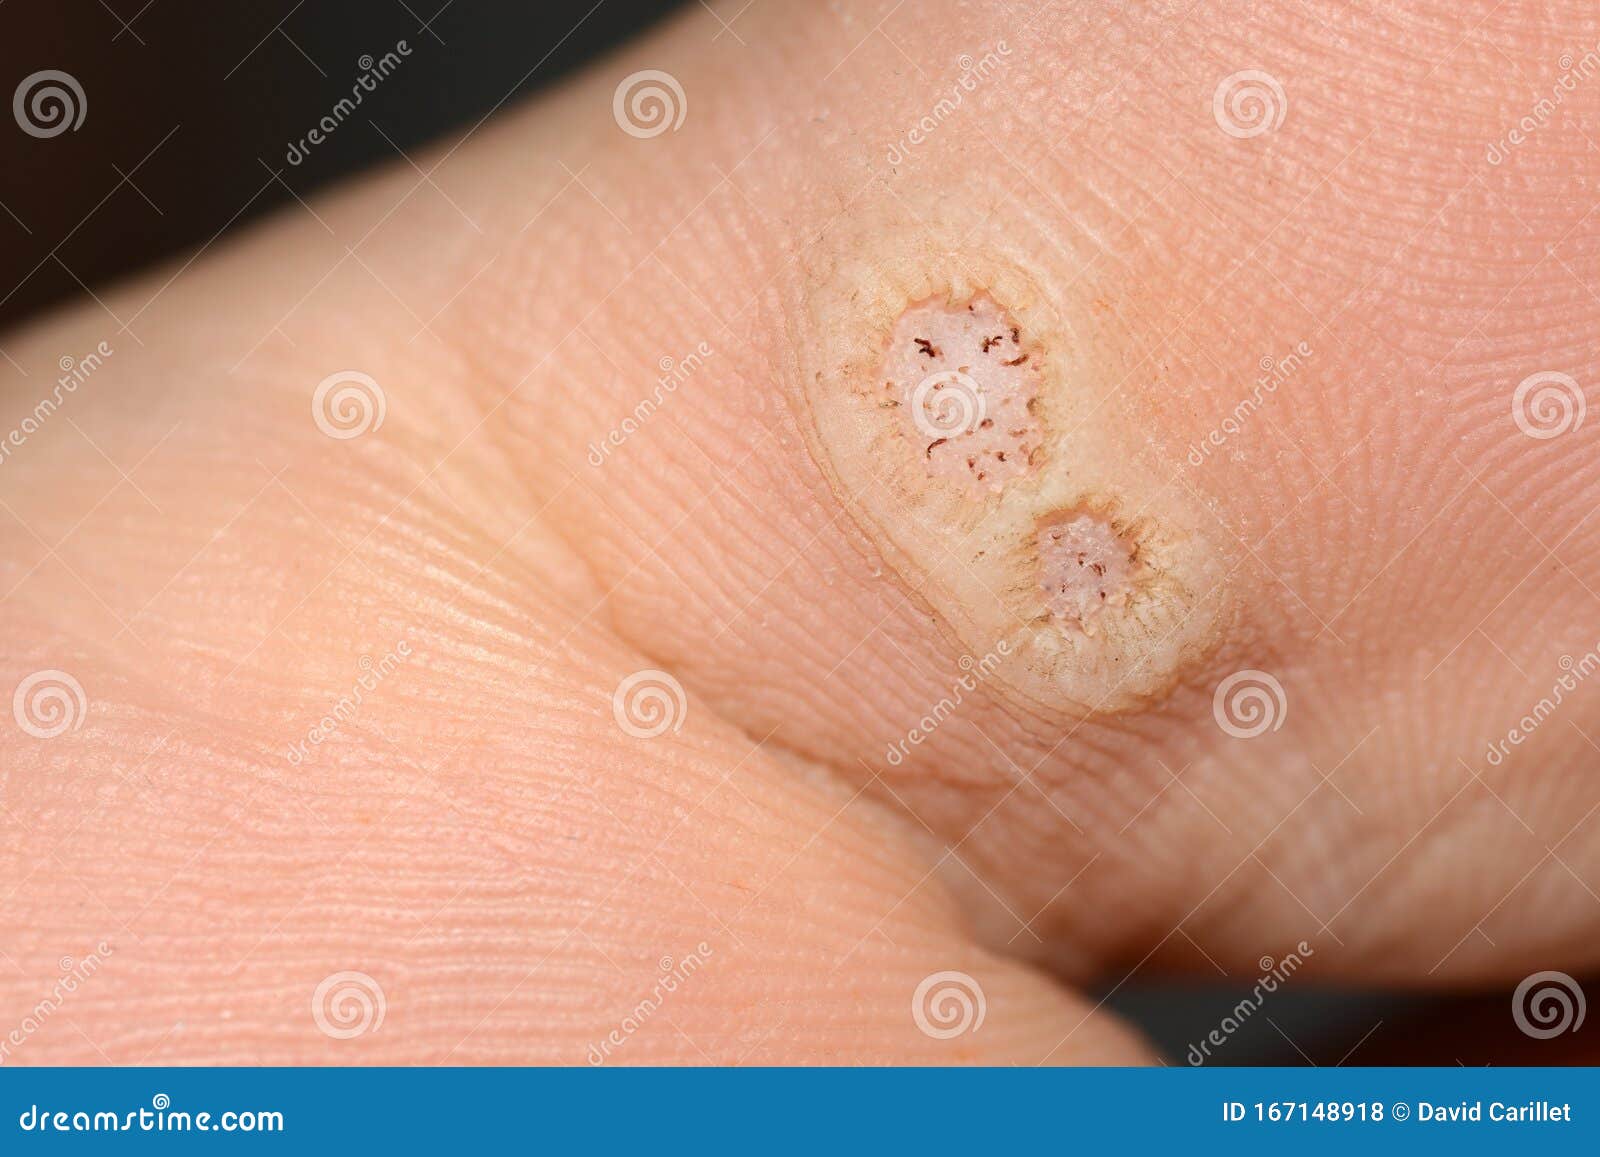 Papilloma warts. Human papillomavirus warts Warts from human papillomavirus